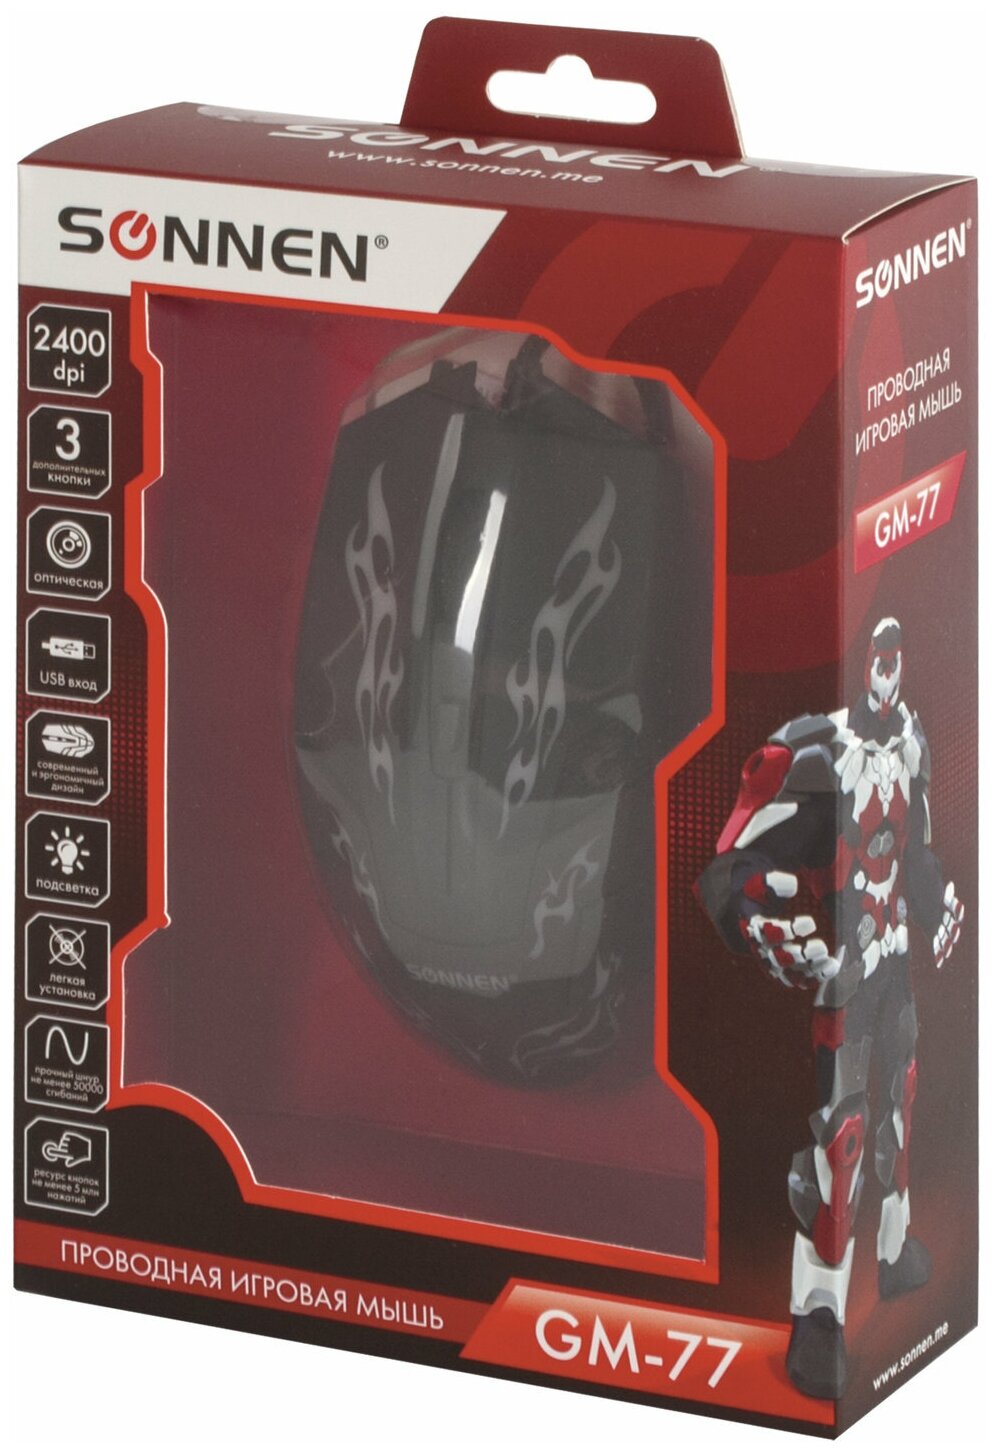 Мышь проводная игровая Sonnen GM-77 USB 2400dpi 6 кнопок оптическая LED подсветка черная - фото №5